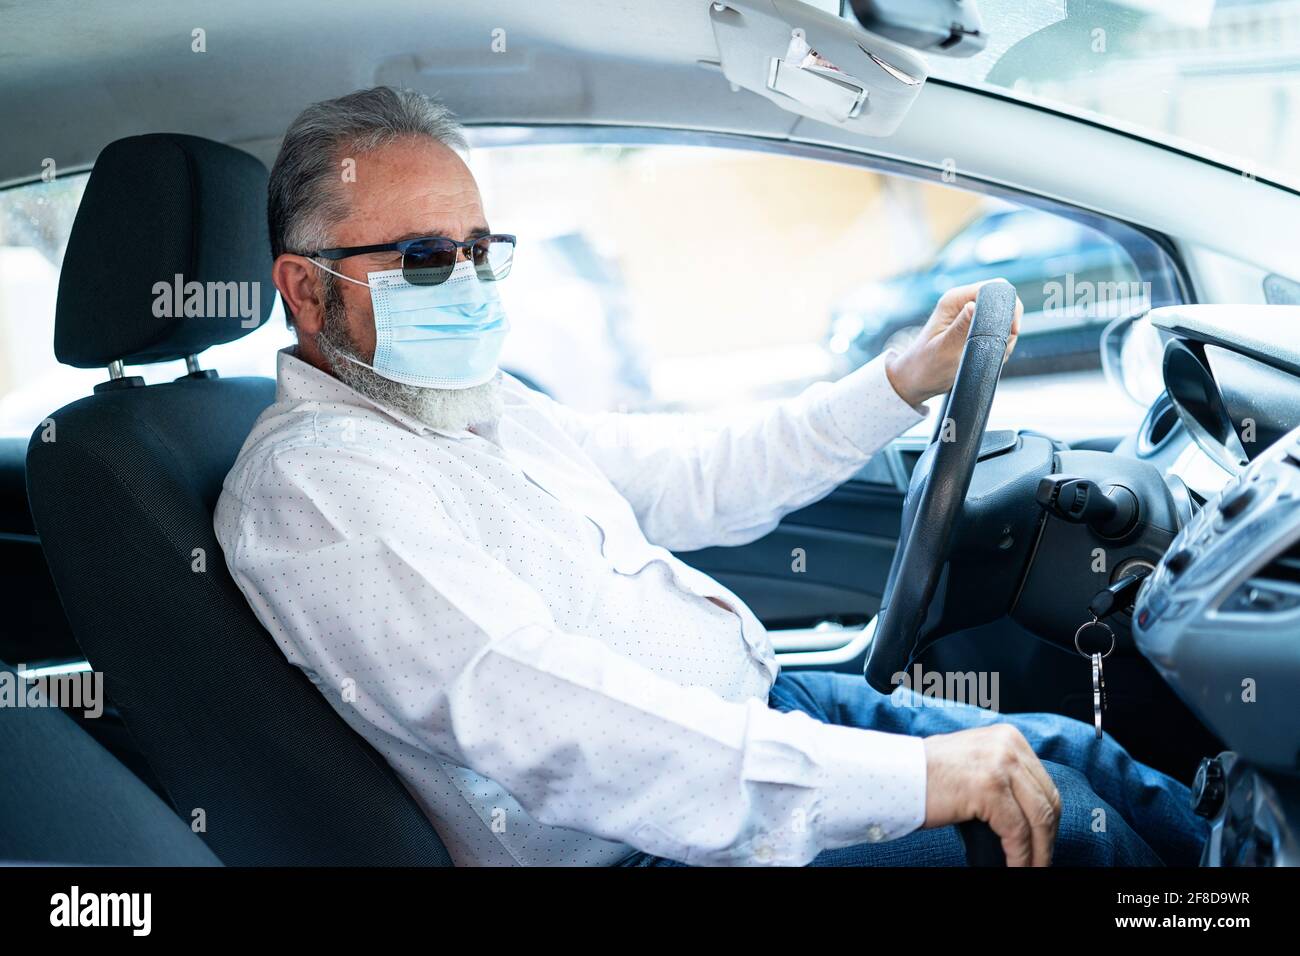 Un uomo anziano in una maschera medica chirurgica che guida un'automobile. Concetto pandemico di coronavirus. Viaggio su strada, viaggio e concetto di persone anziane Foto Stock